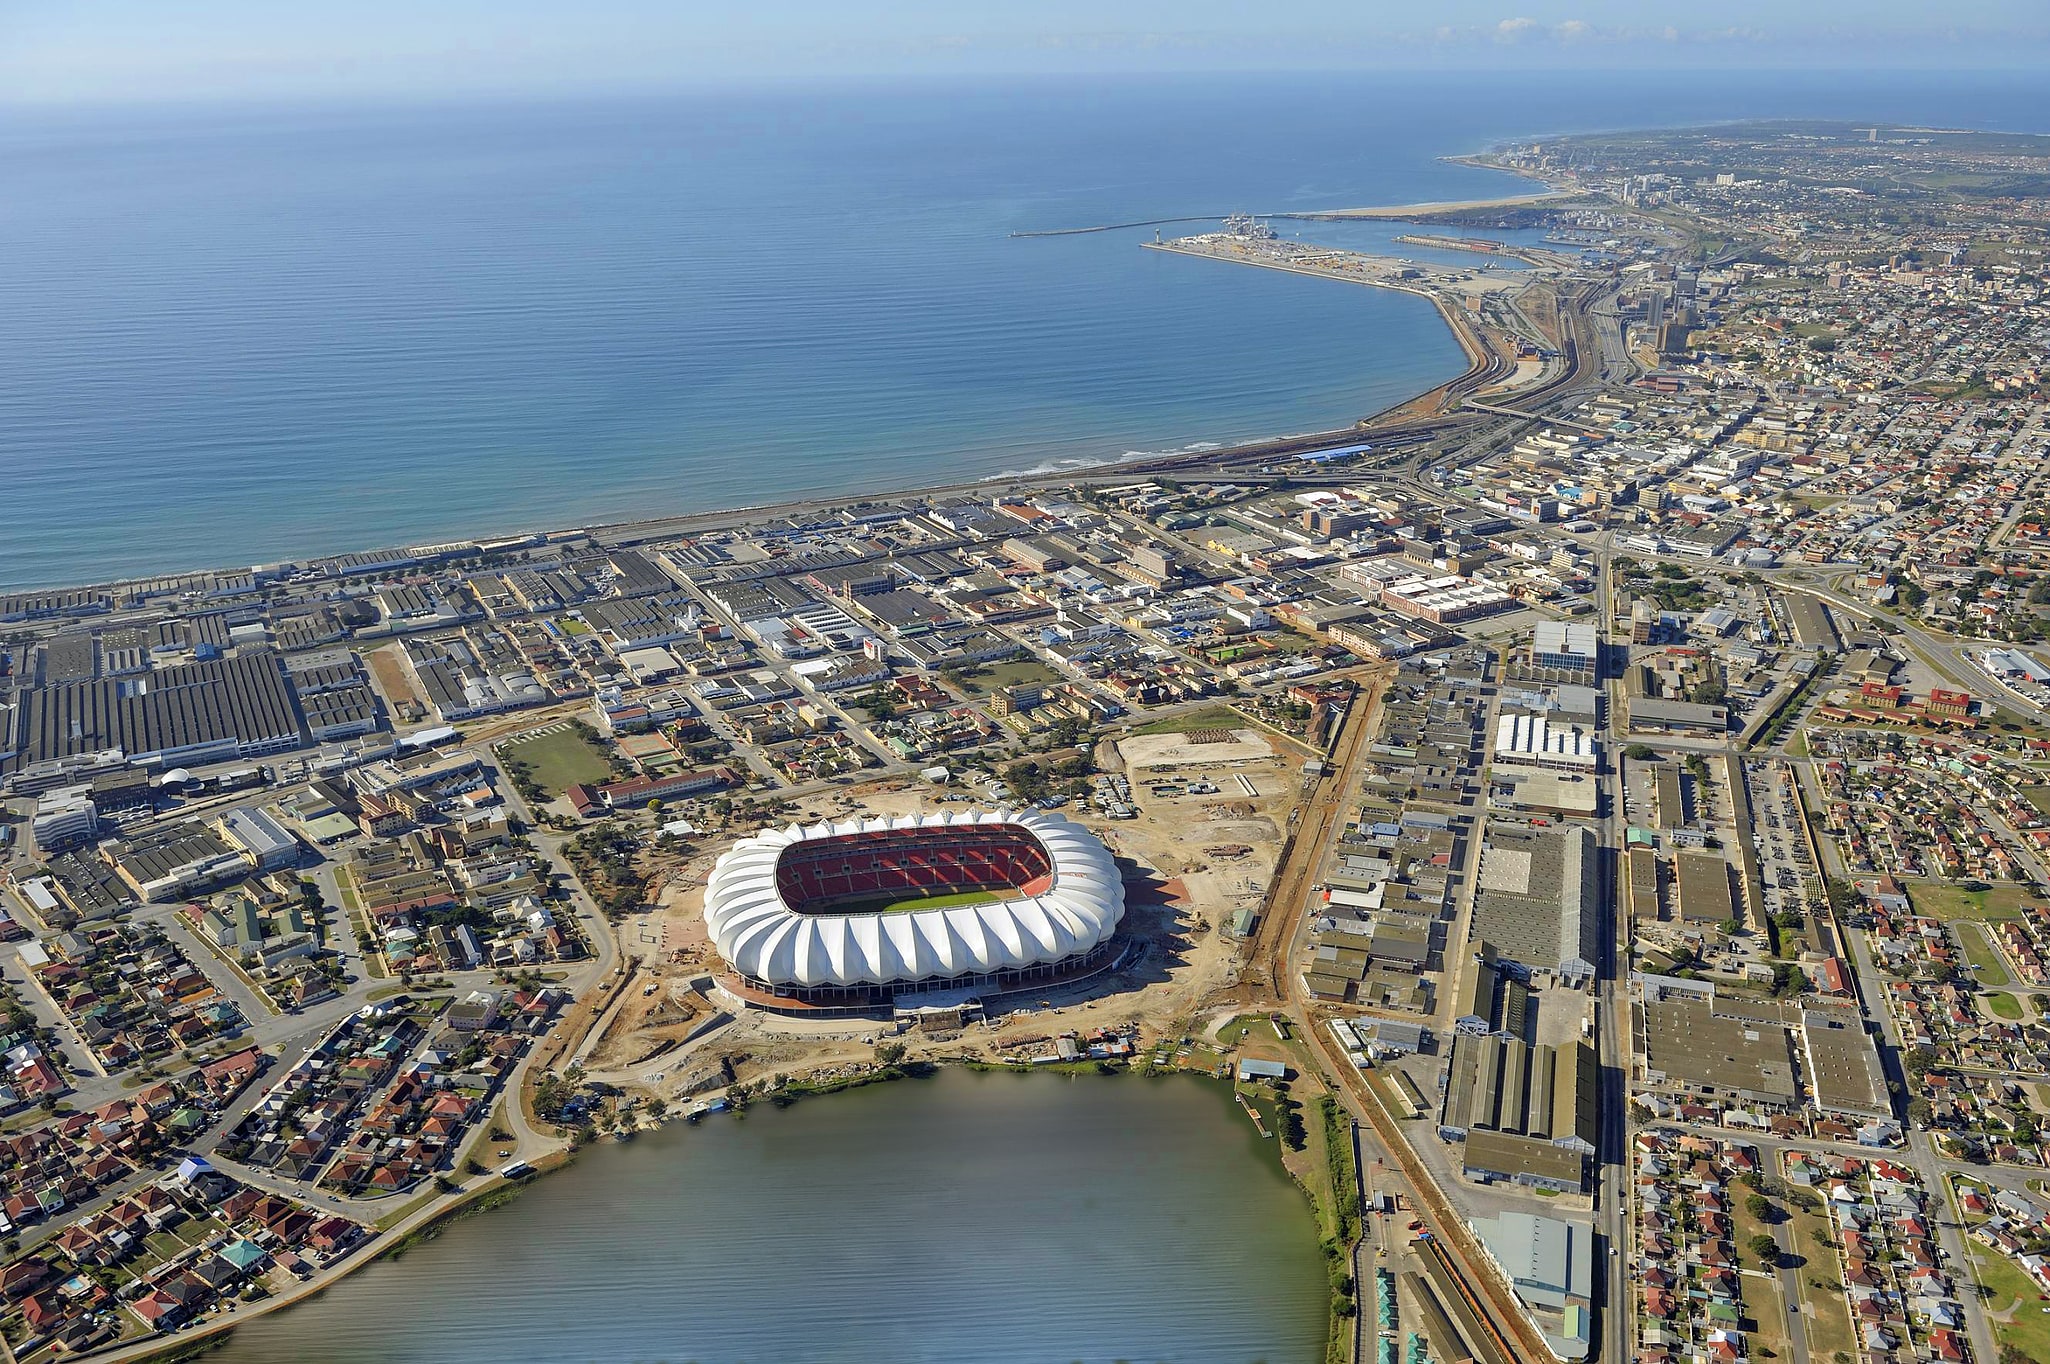 Port Elizabeth, South Africa